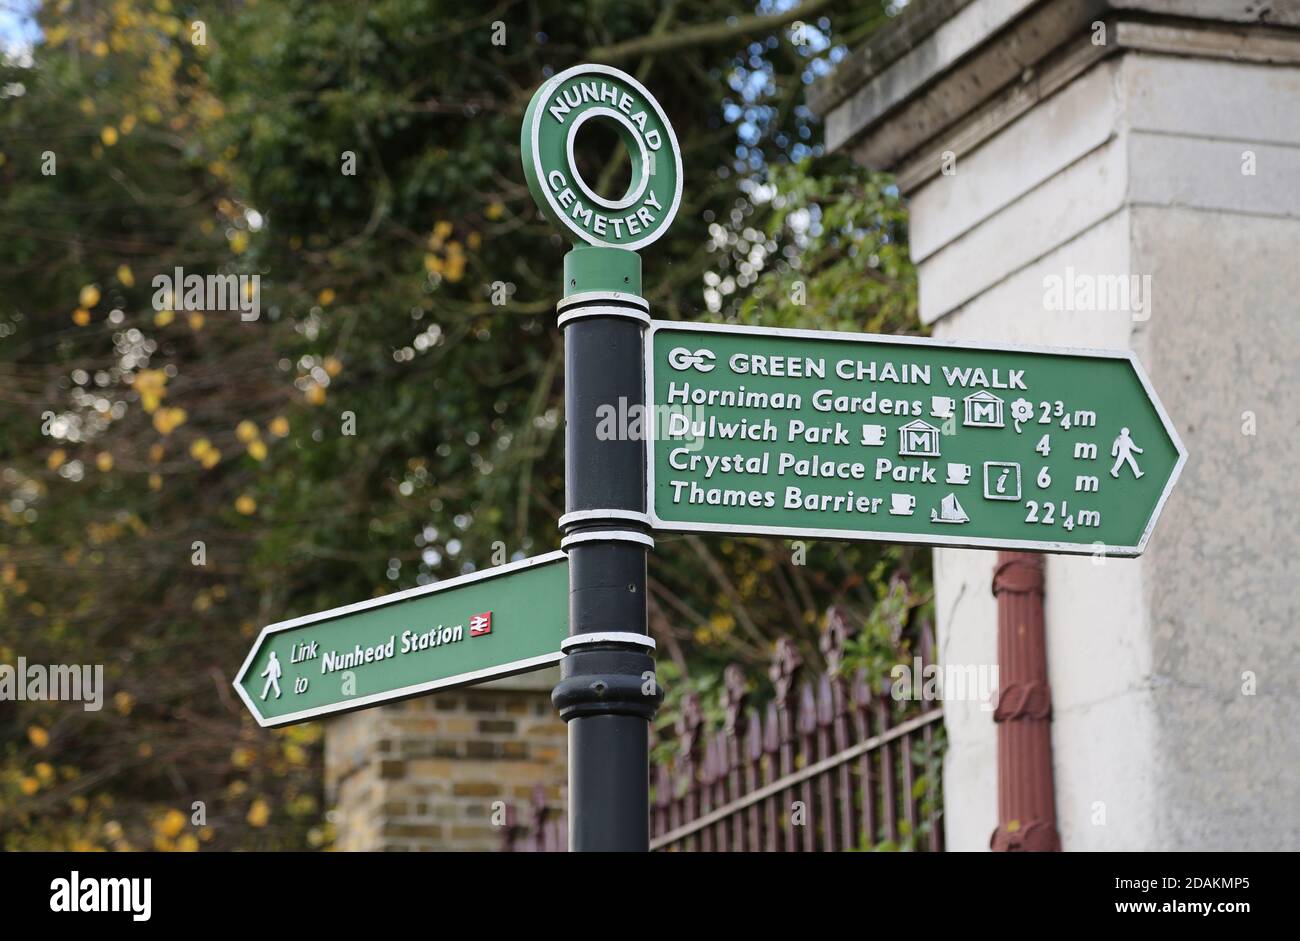 Panneau Green Chain Walk au cimetière Nunhead, dans le sud-est de Londres, au Royaume-Uni. Listes : jardins Horniman, parc Dulwich, barrière de la Tamise, parc Crystal Palace, Nunhead. Banque D'Images